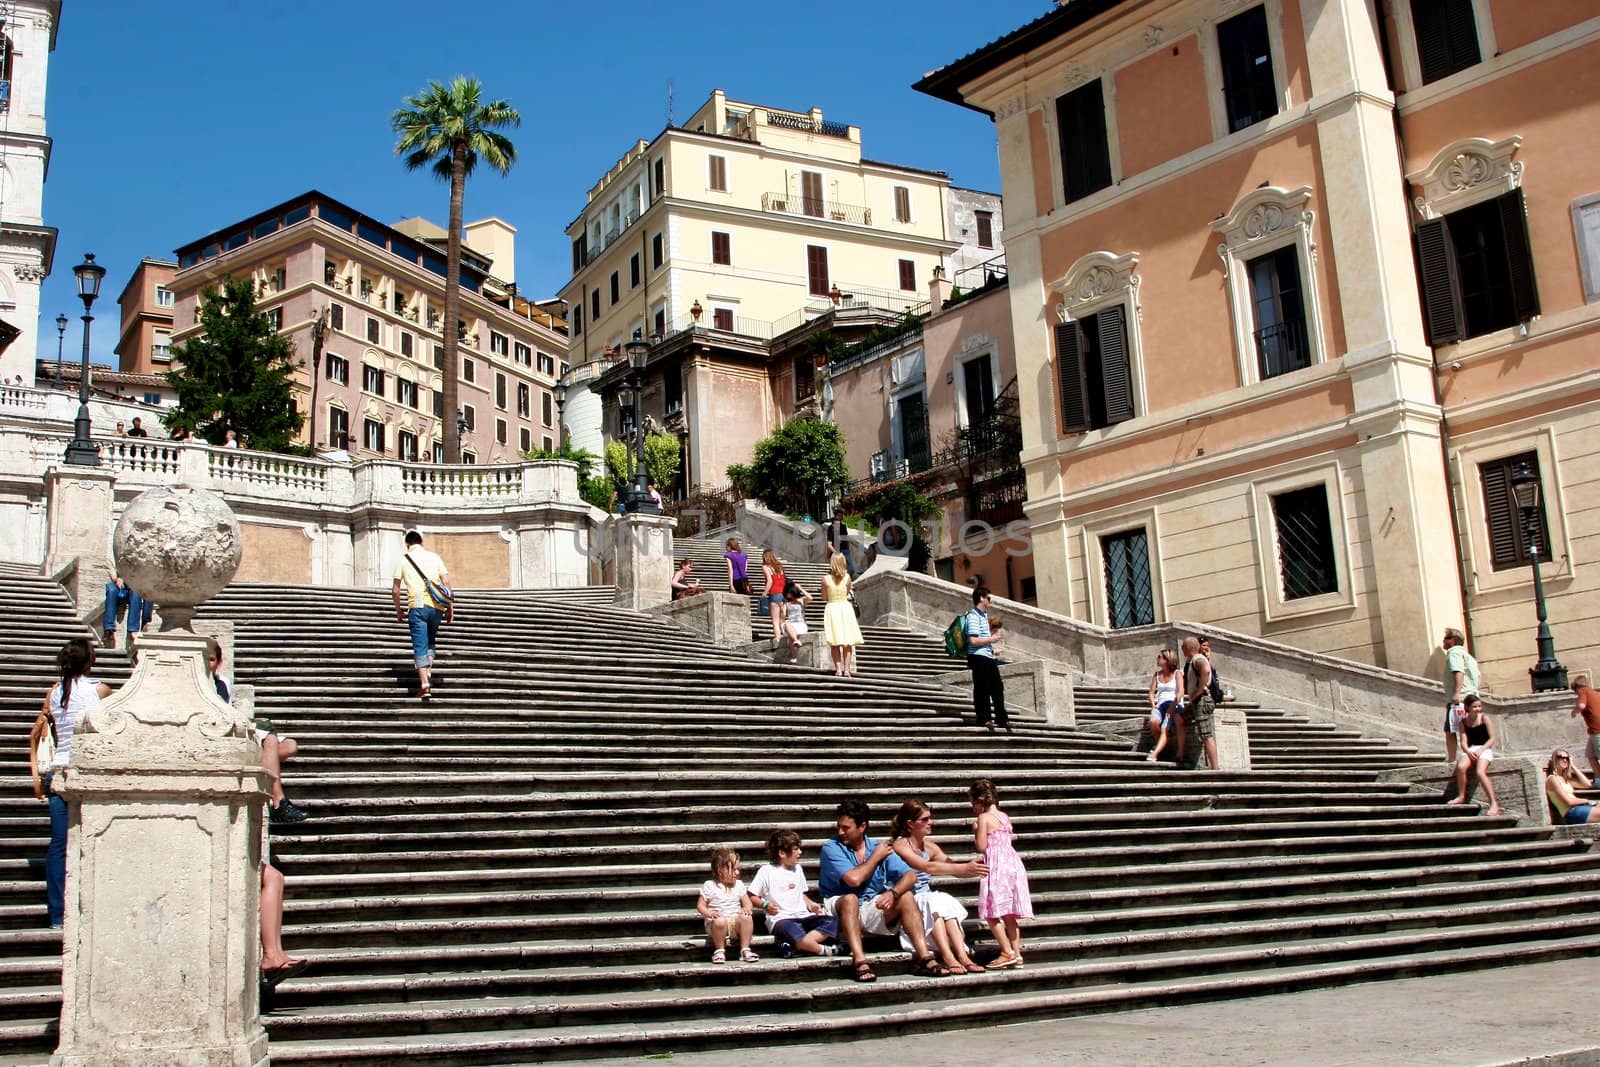 Spanish steps in Rome